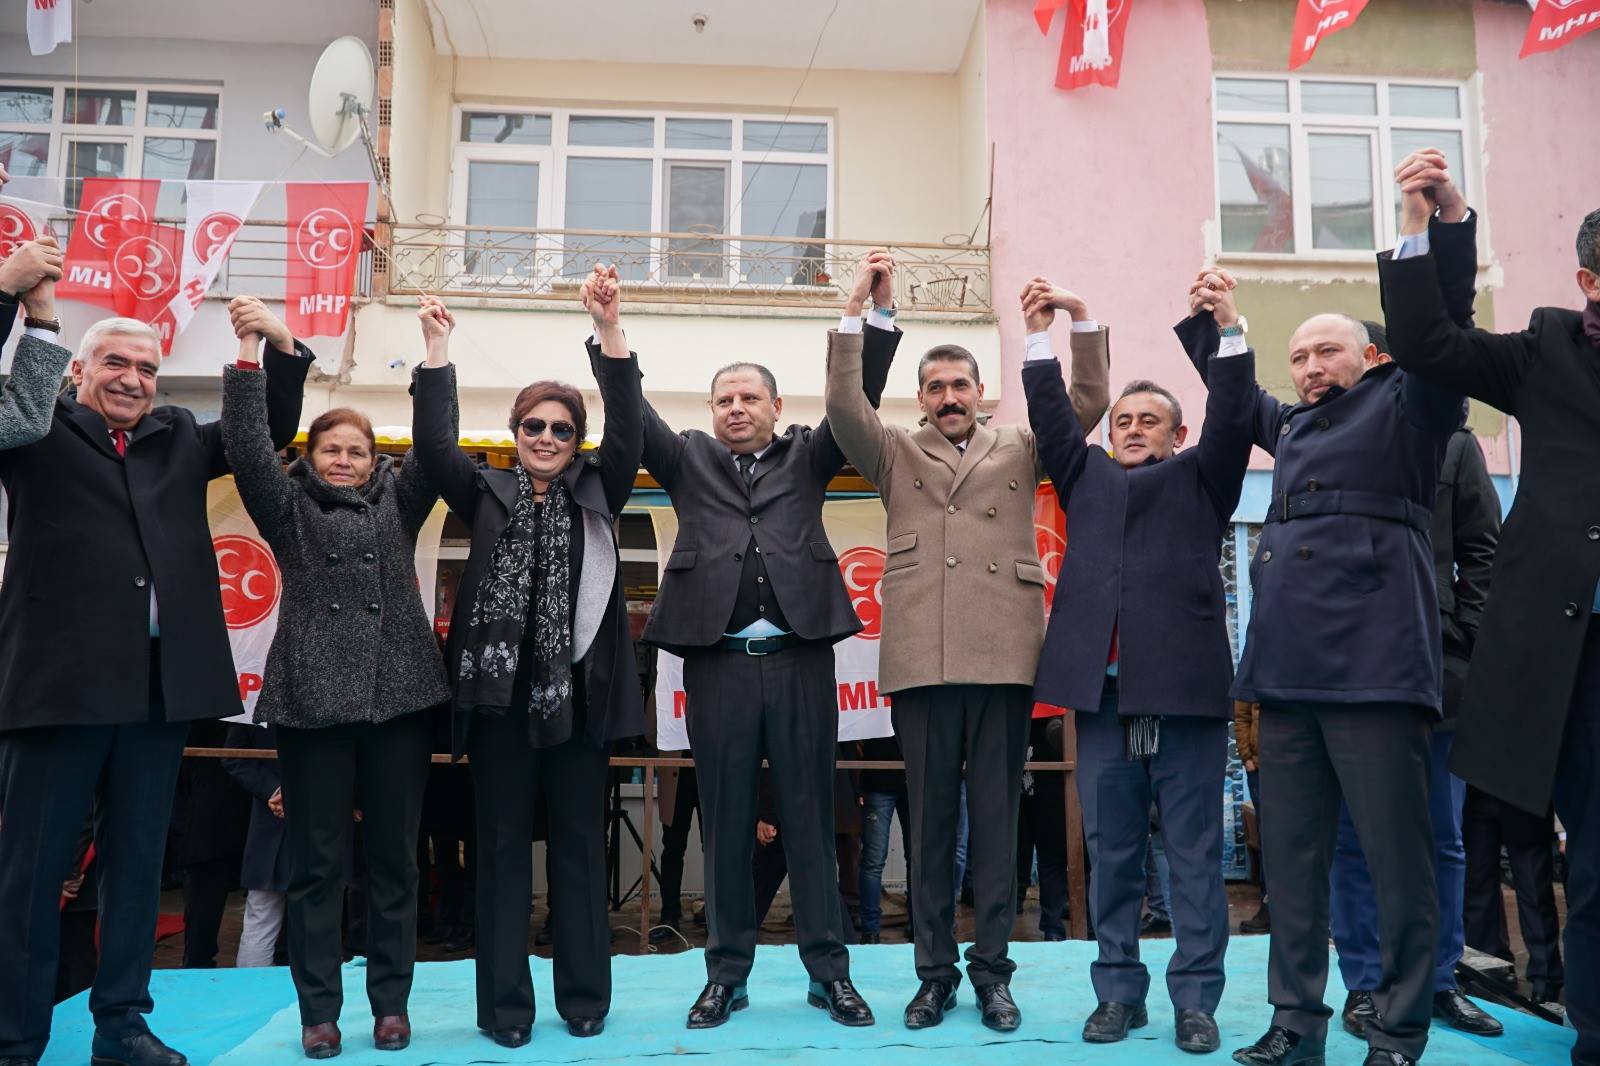 MHP Kırıkkale’yi almaya kararlı - Kırıkkale Haber, Son Dakika Kırıkkale Haberleri